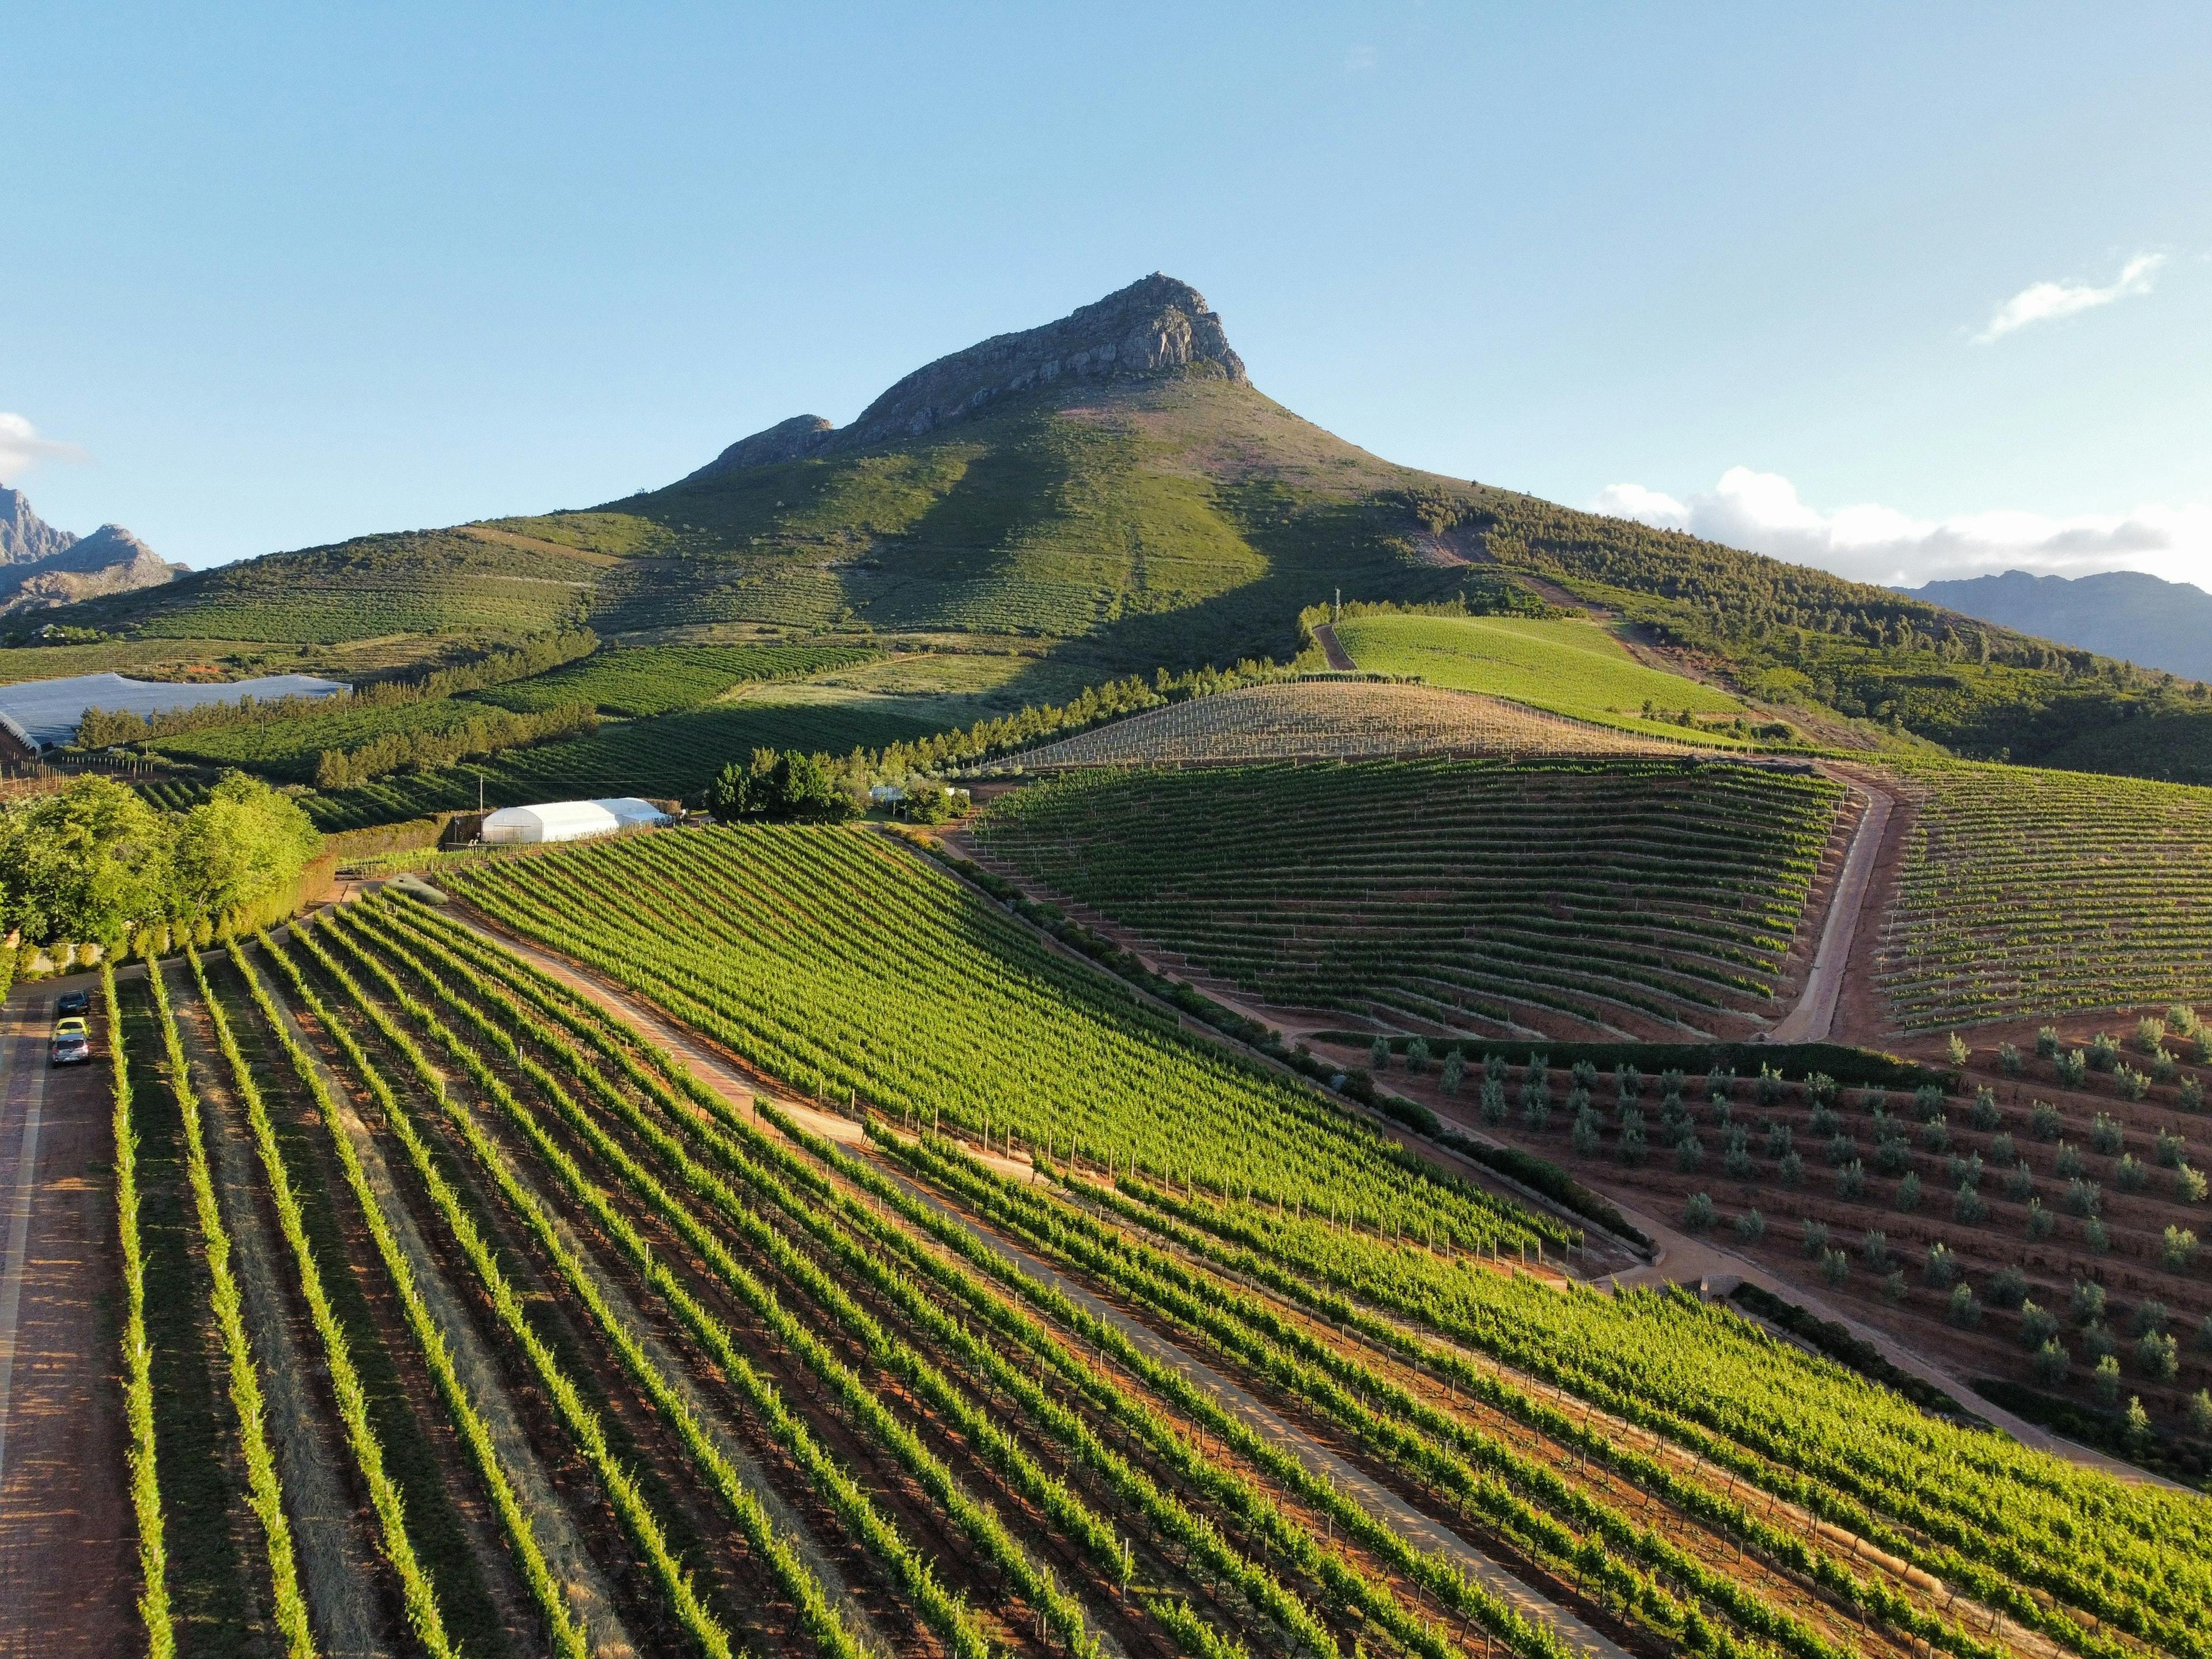 Stellenbosch vineyards in South Africa.